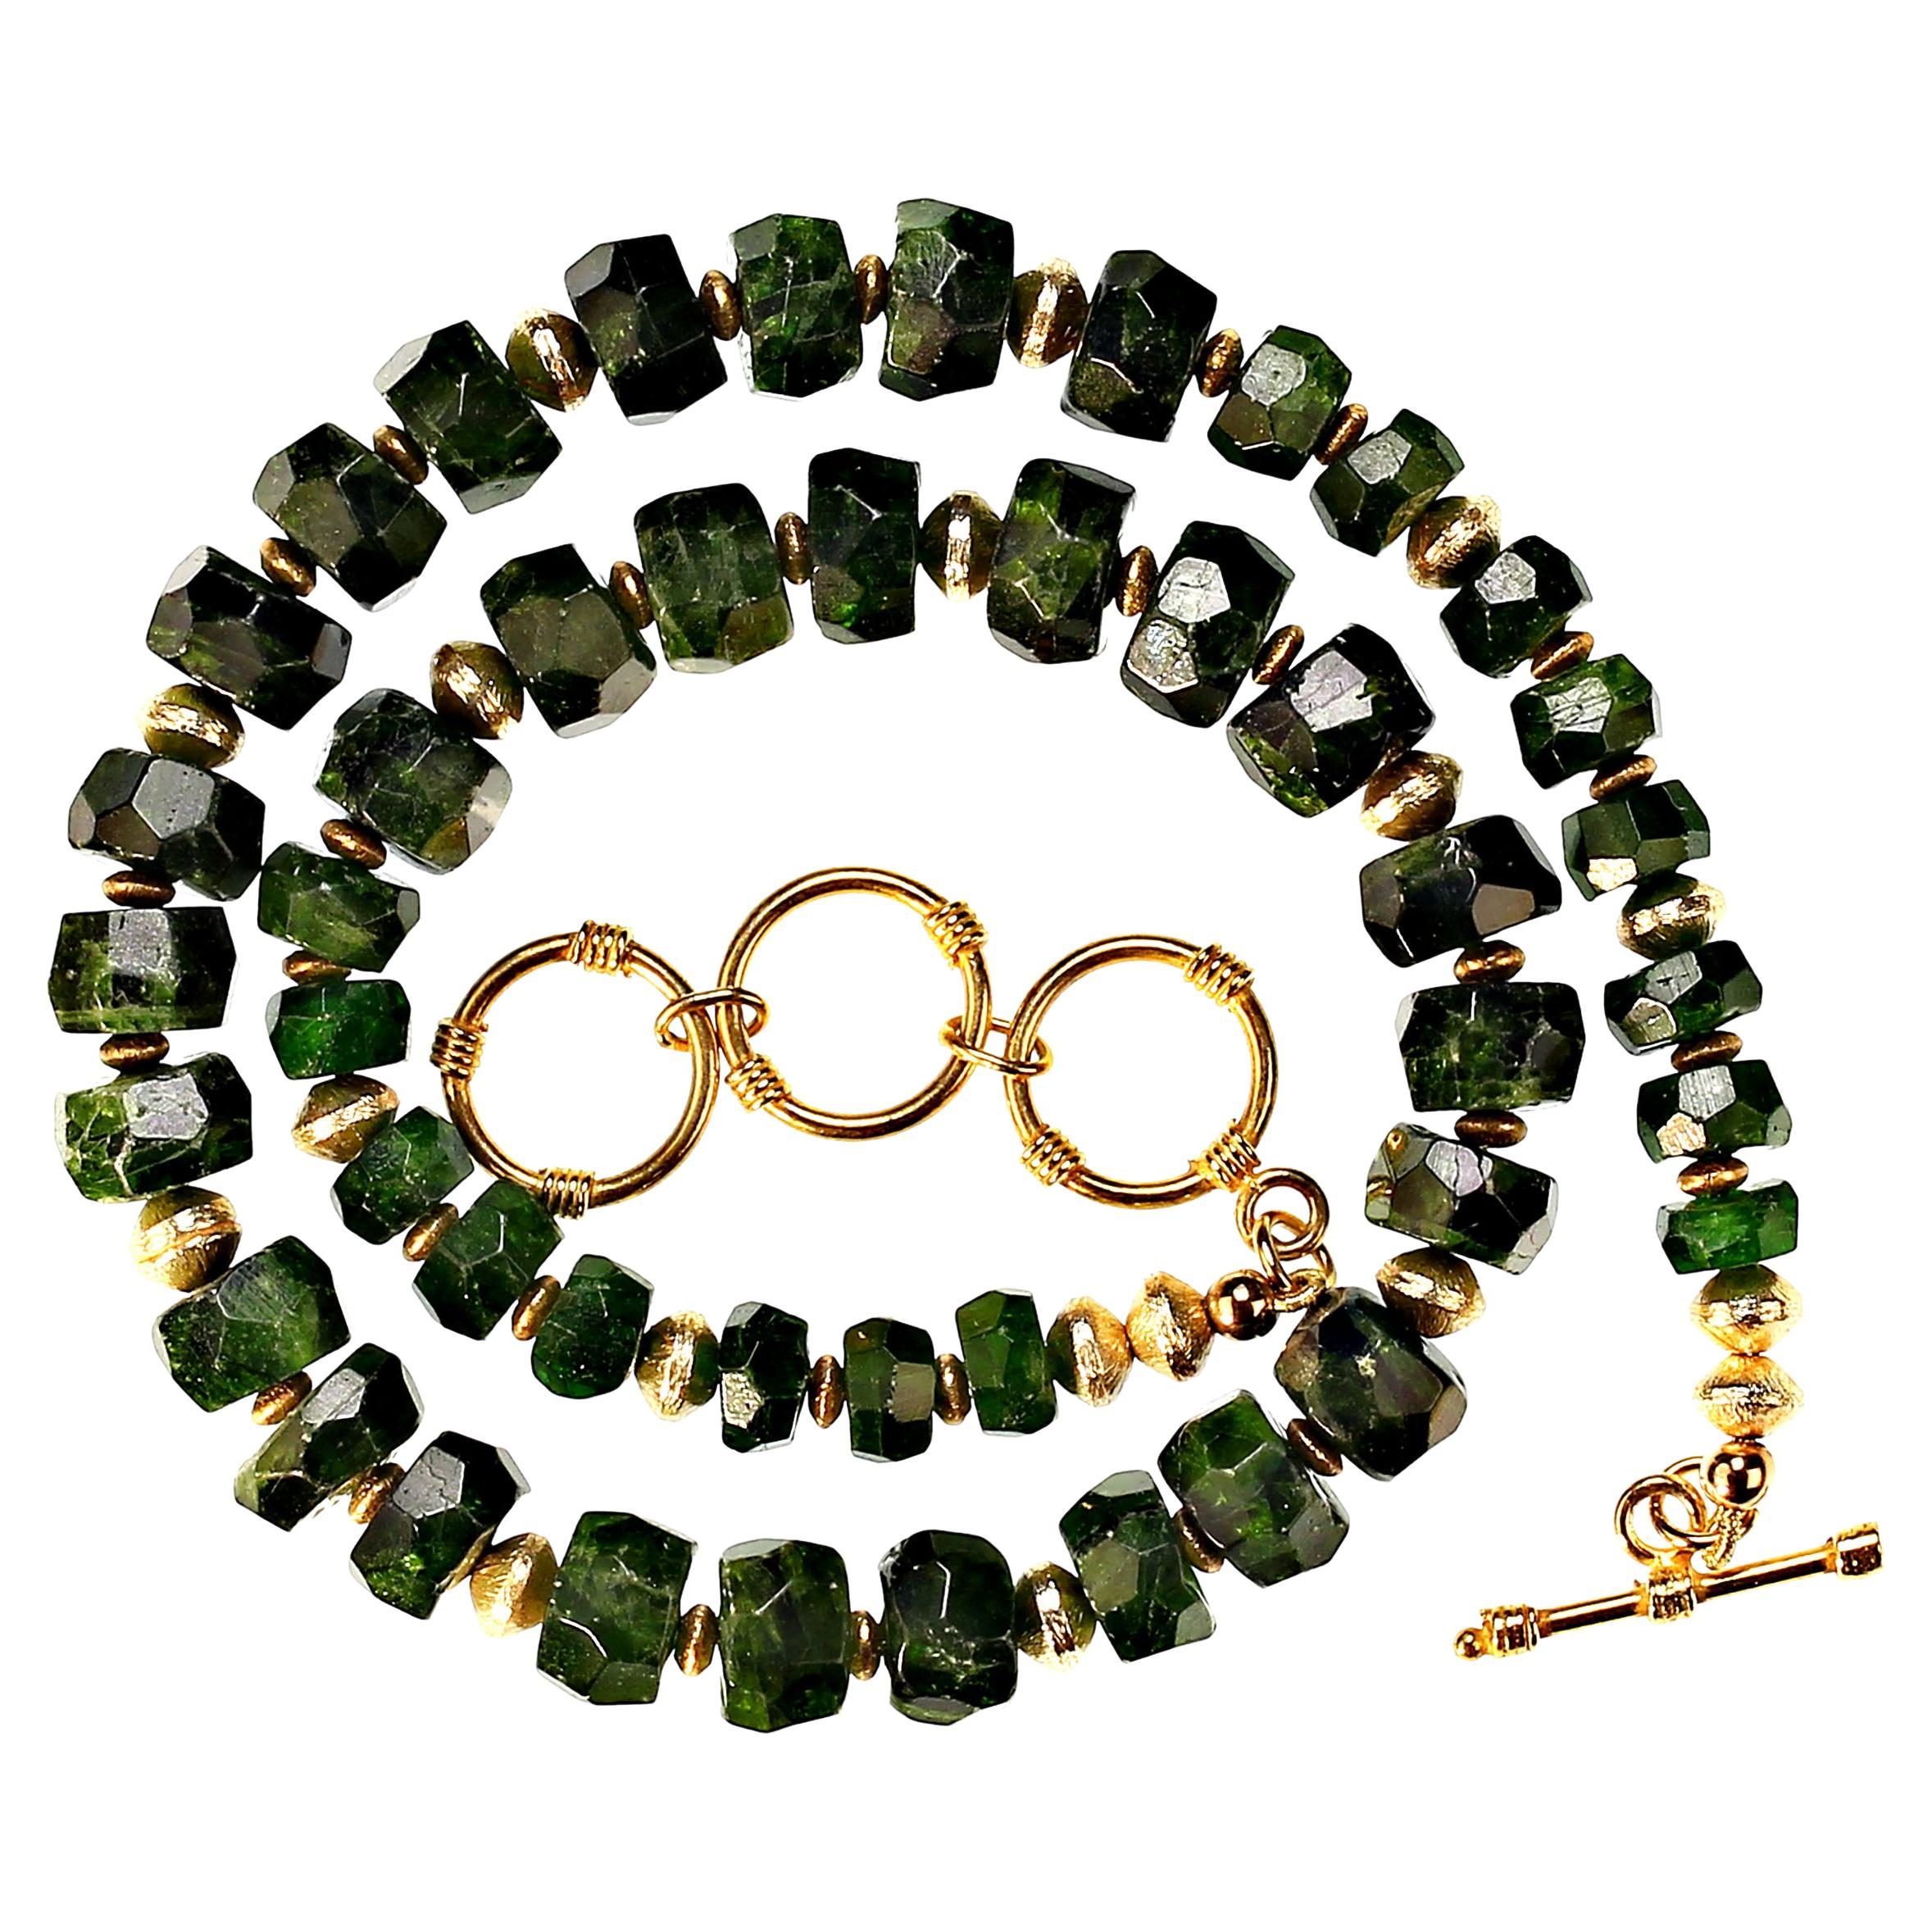 Funkelnde grüne Chrom-Diopside-Halskette für alle, die Grün lieben! Diese 8-10 MM undurchsichtigen Edelsteine funkeln und glänzen. Fügen Sie die Rondellen aus Goldblech hinzu, und Sie werden viel Freude haben. Diese Halskette hat einen vergoldeten